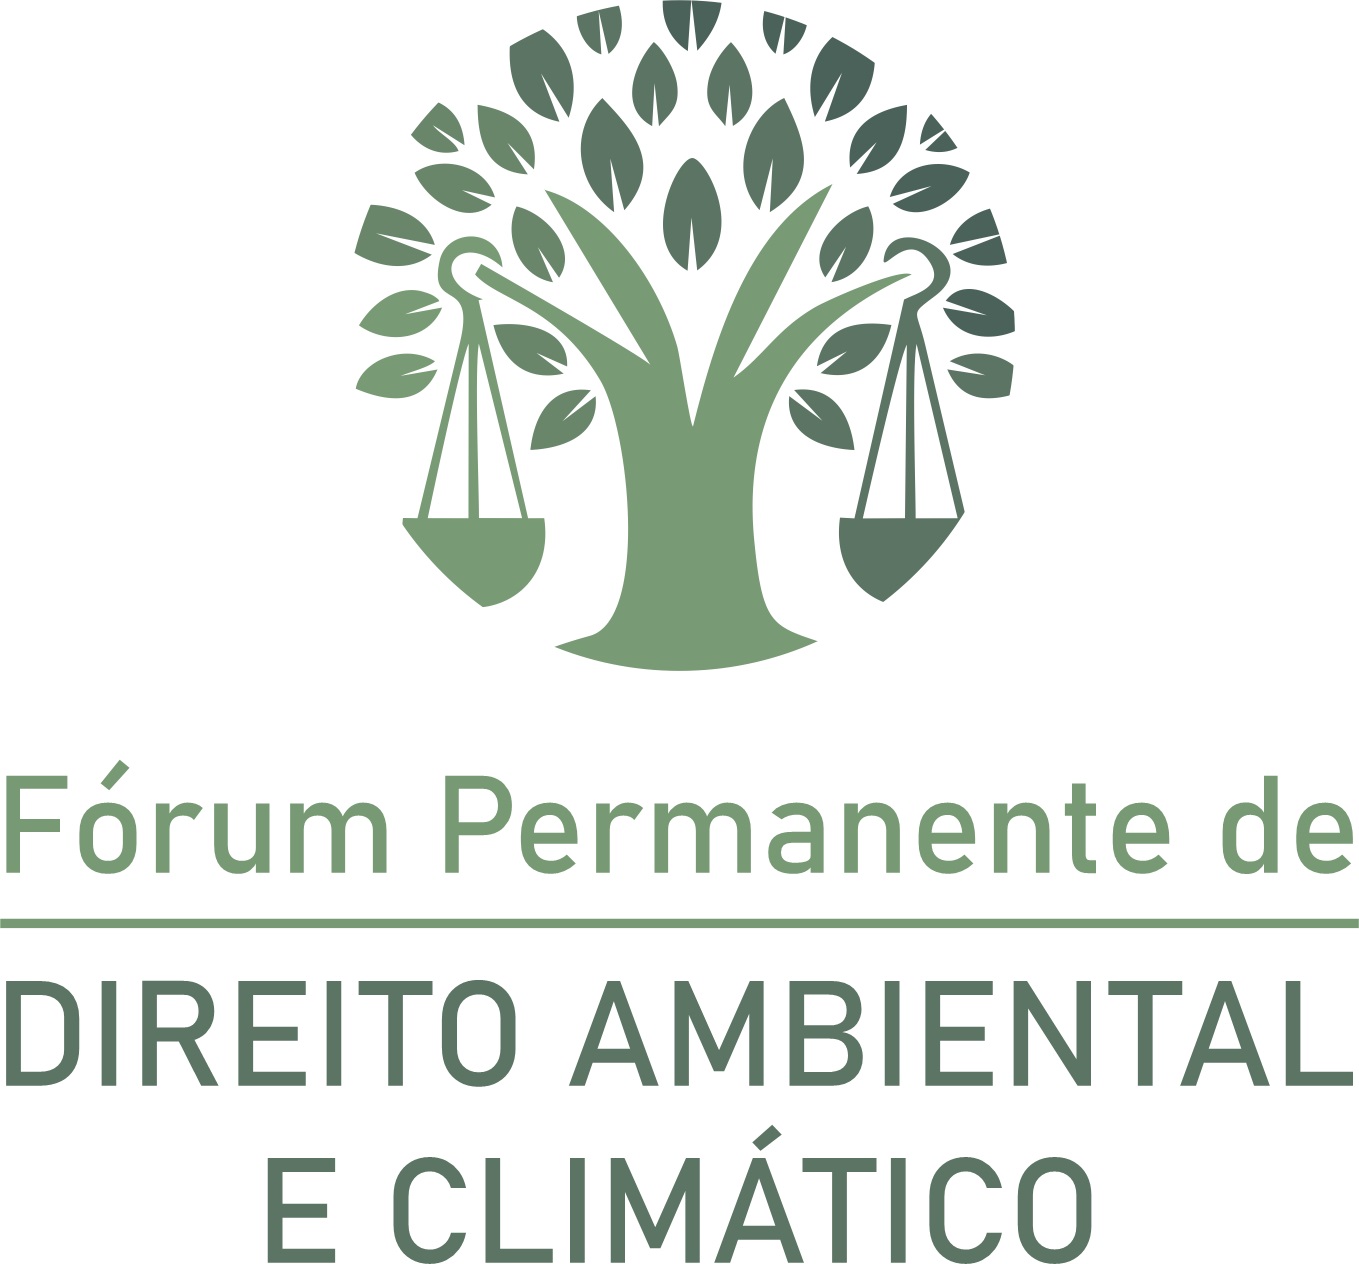 Fórum Permanente de Direito Ambiental e Climático